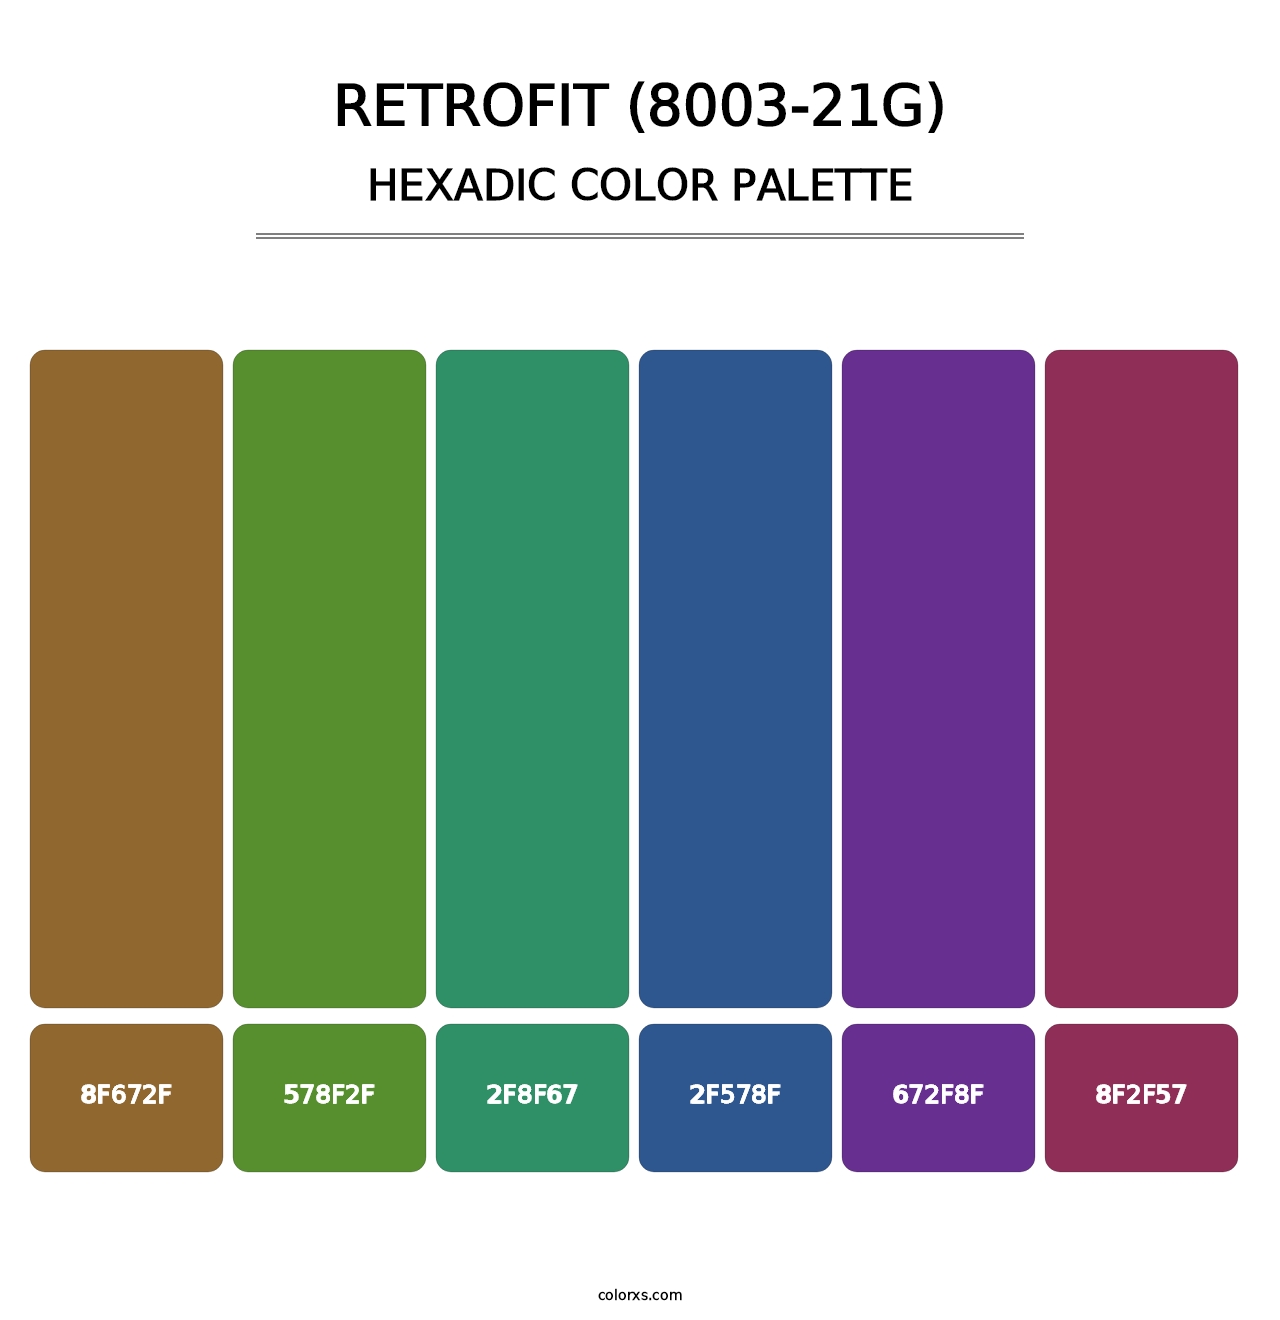 Retrofit (8003-21G) - Hexadic Color Palette